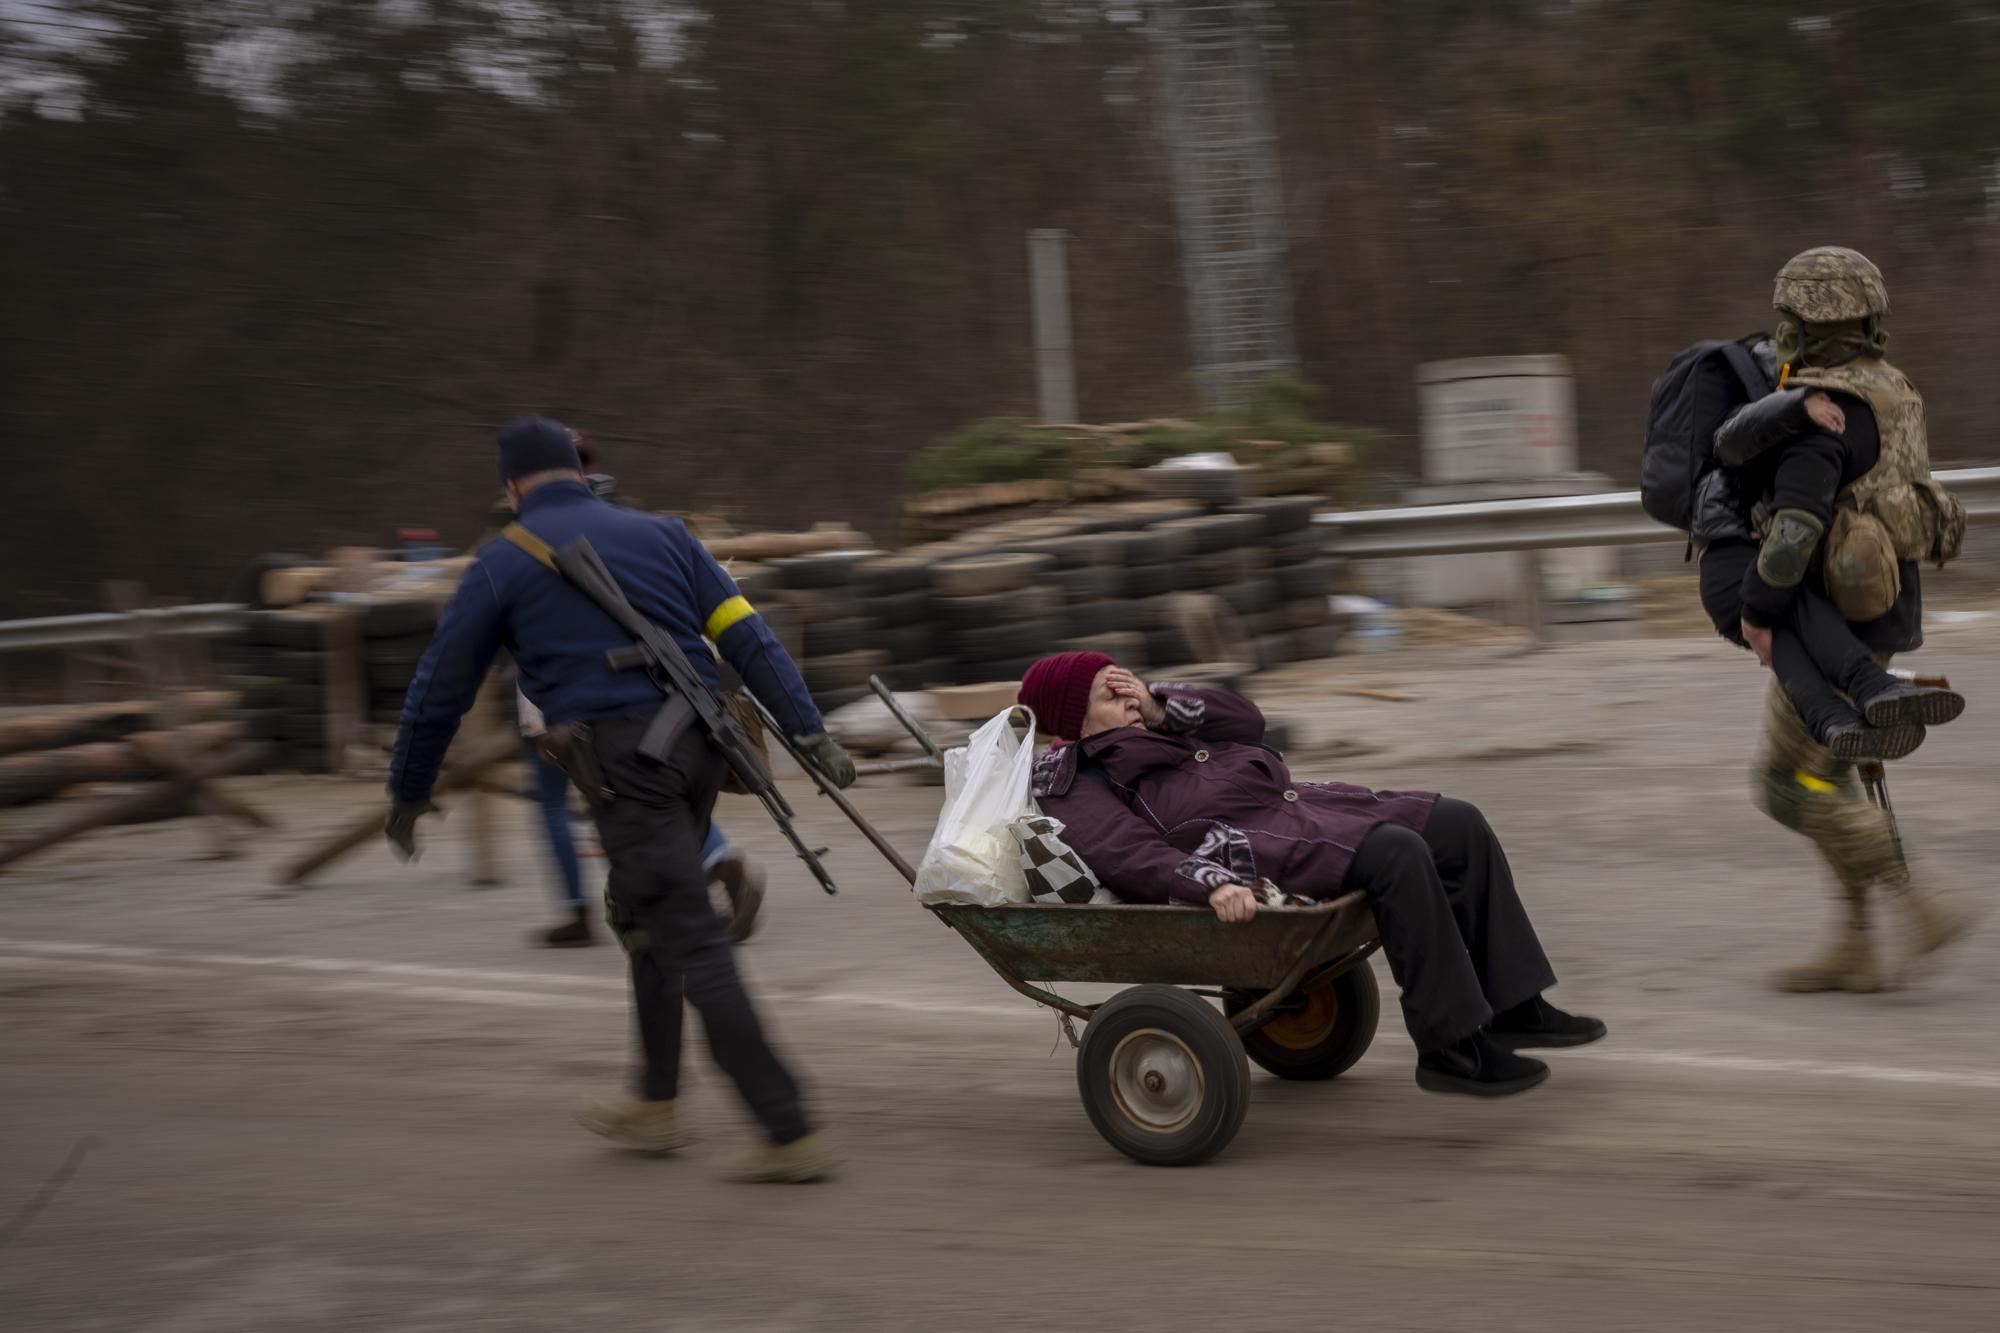 100 ngày chiến sự ở Ukraine: Lặng người trước những bức ảnh vừa đau thương vừa kiên cường - Ảnh 7.